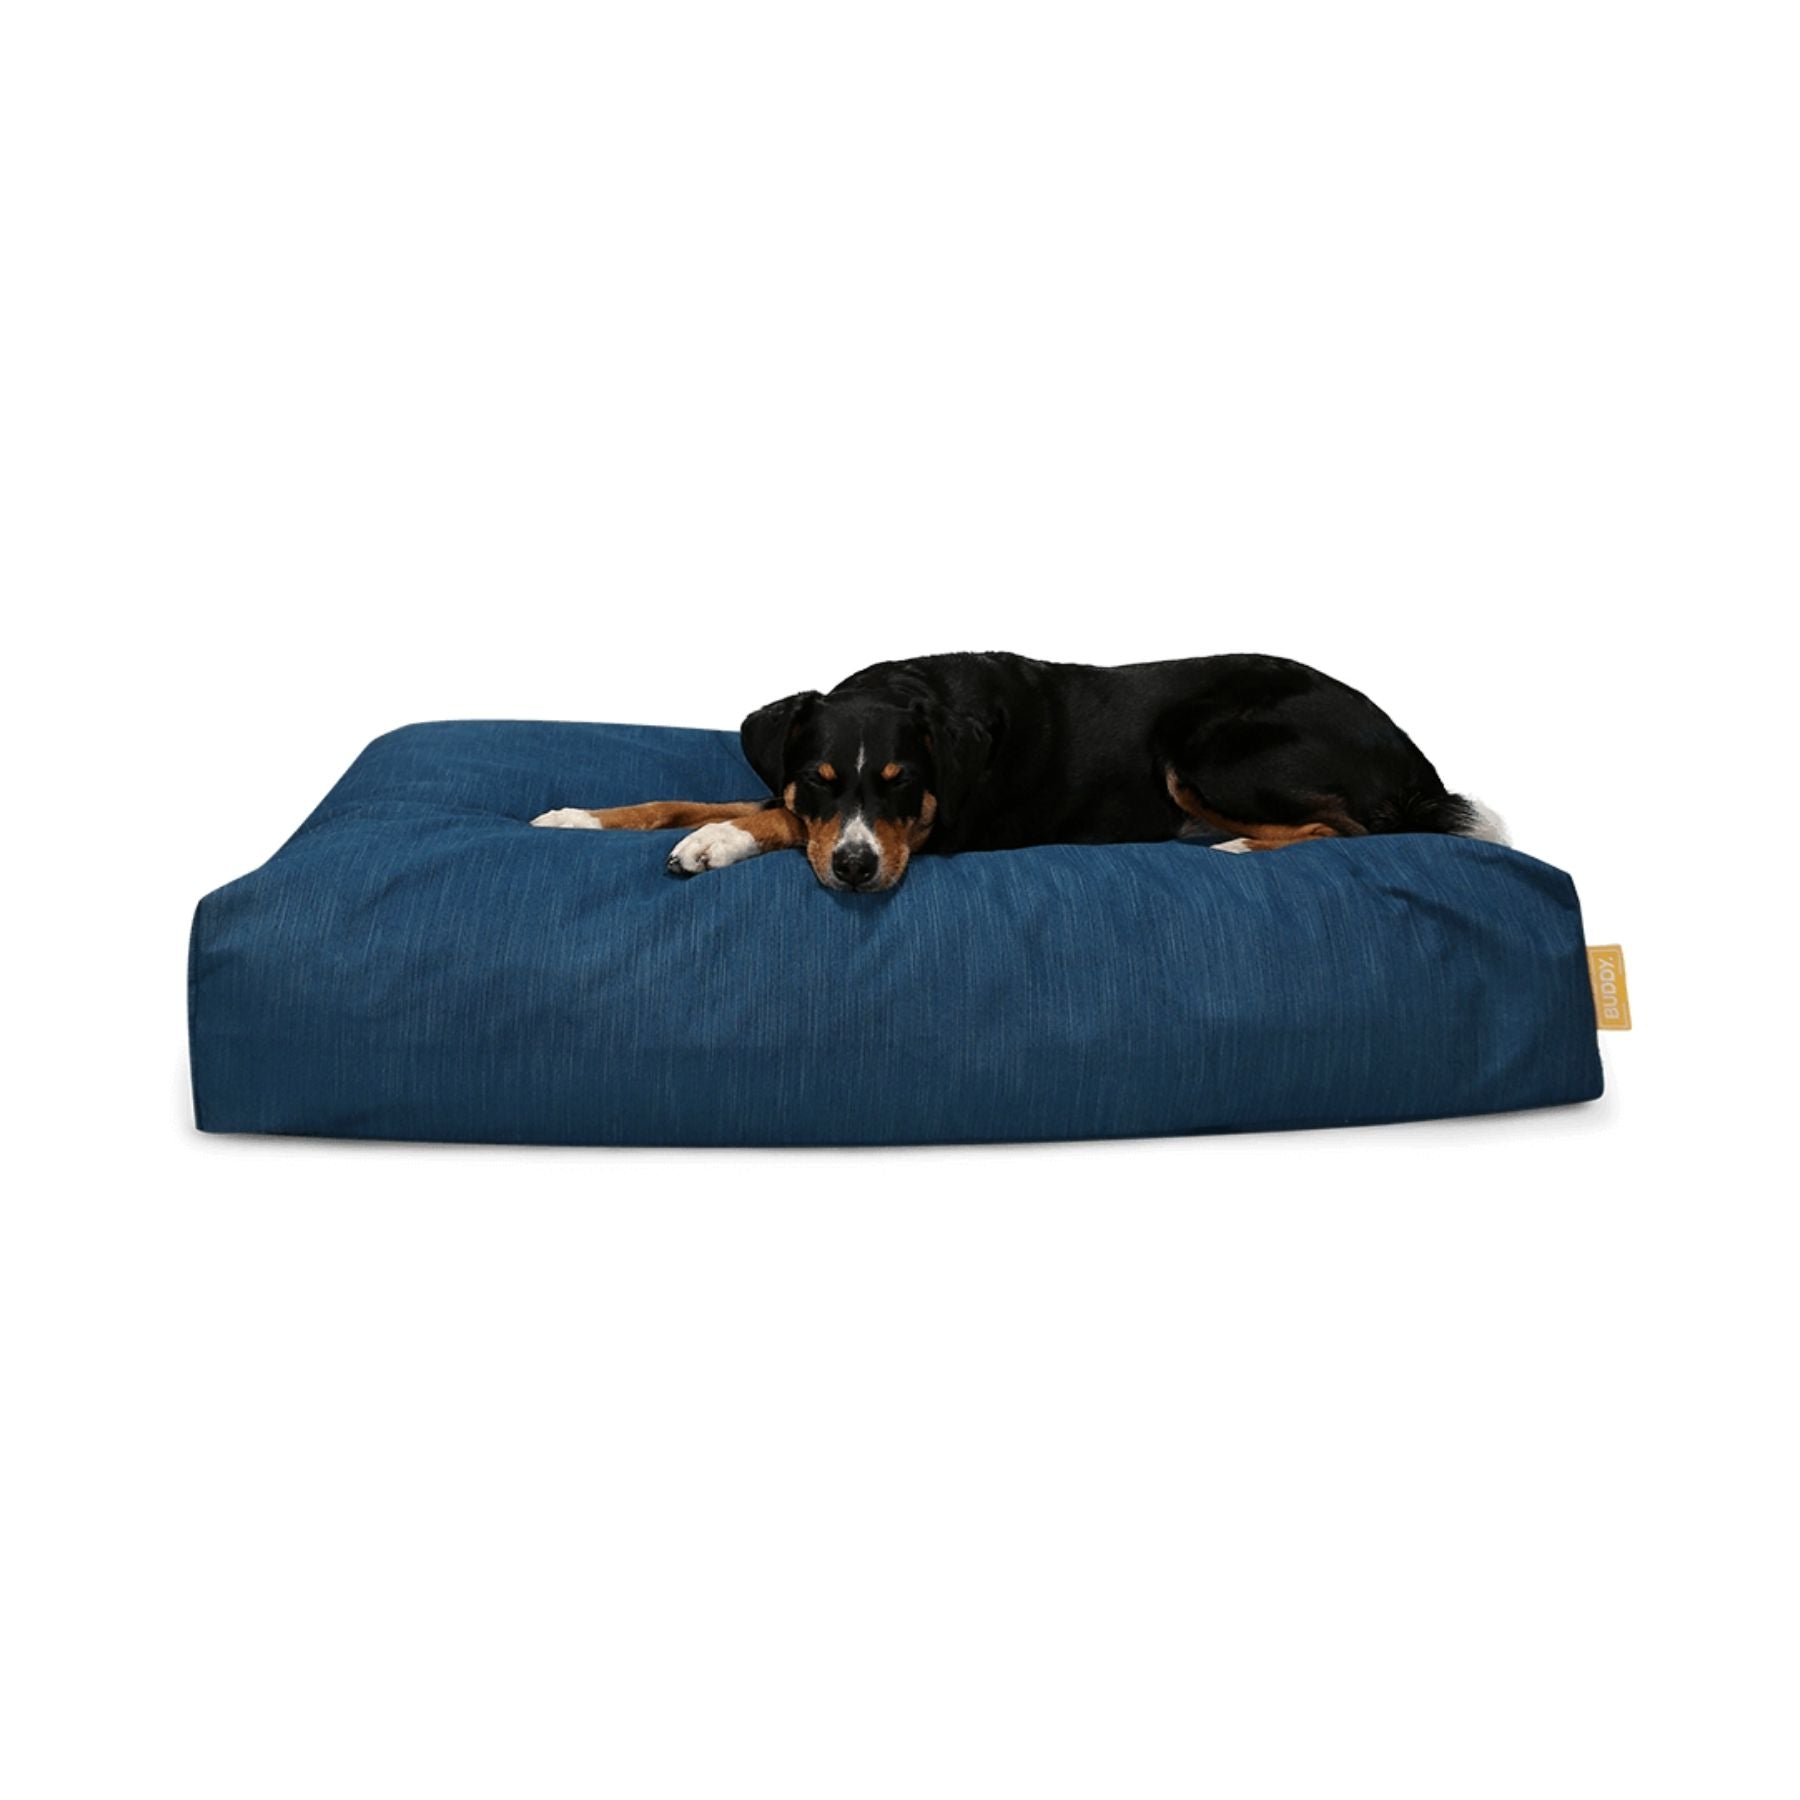 Nachhaltiges Hundebett von BUDDY PETS bei PAWSOME Hundezubehör erhältlich. Wir bieten dieses bequeme Bett in 4 Farben & 3 Größen an. Dies ist die Farbe Ocean Blue.